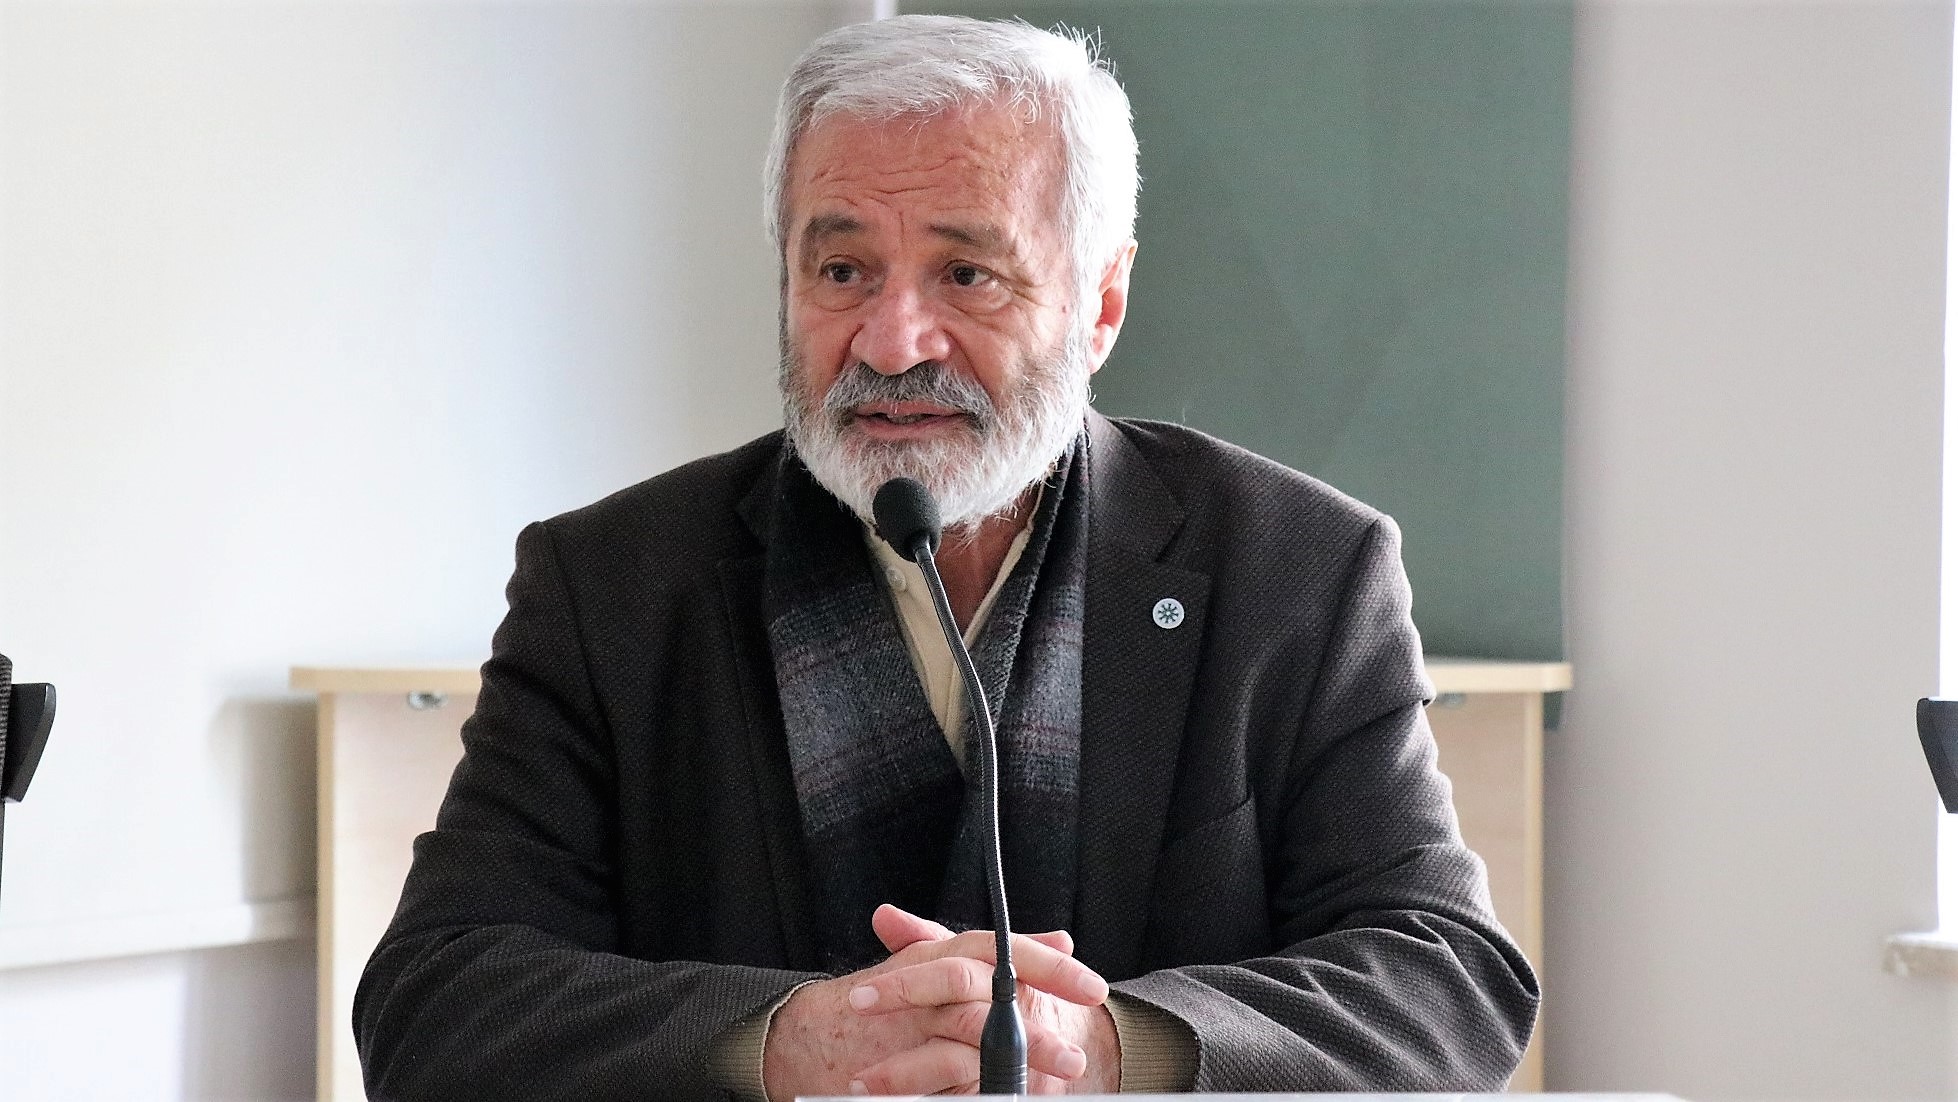 D. Mehmet Doğan İstanbul’dan gelen öğrenci ve öğretmenlere Âkif’i anlattı